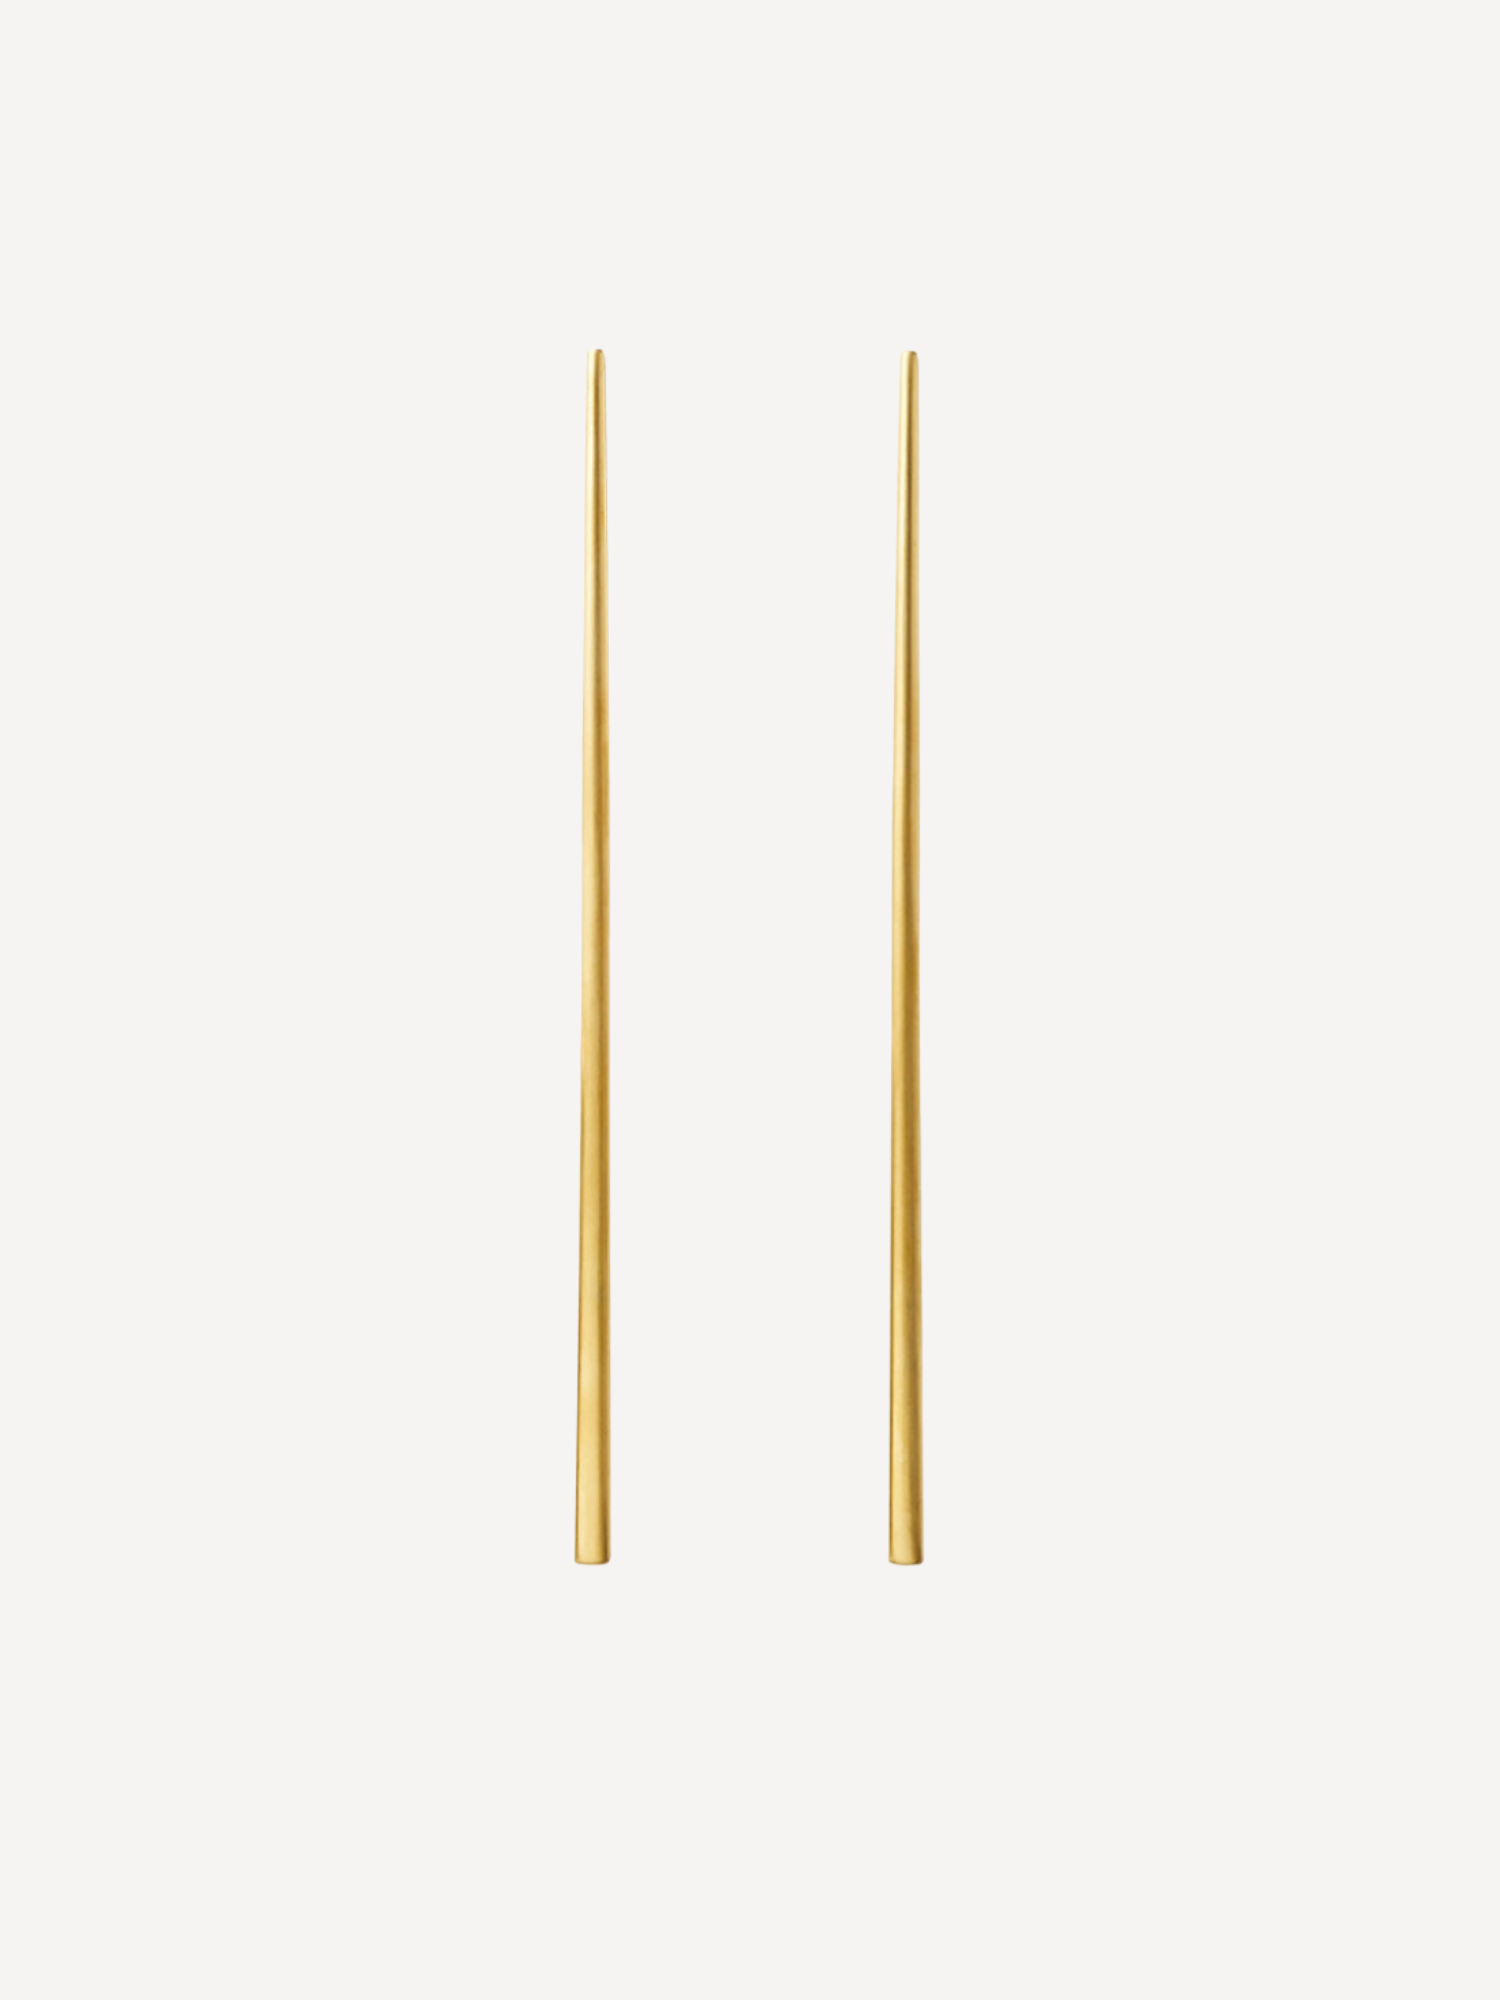 Set of Gold Chopsticks